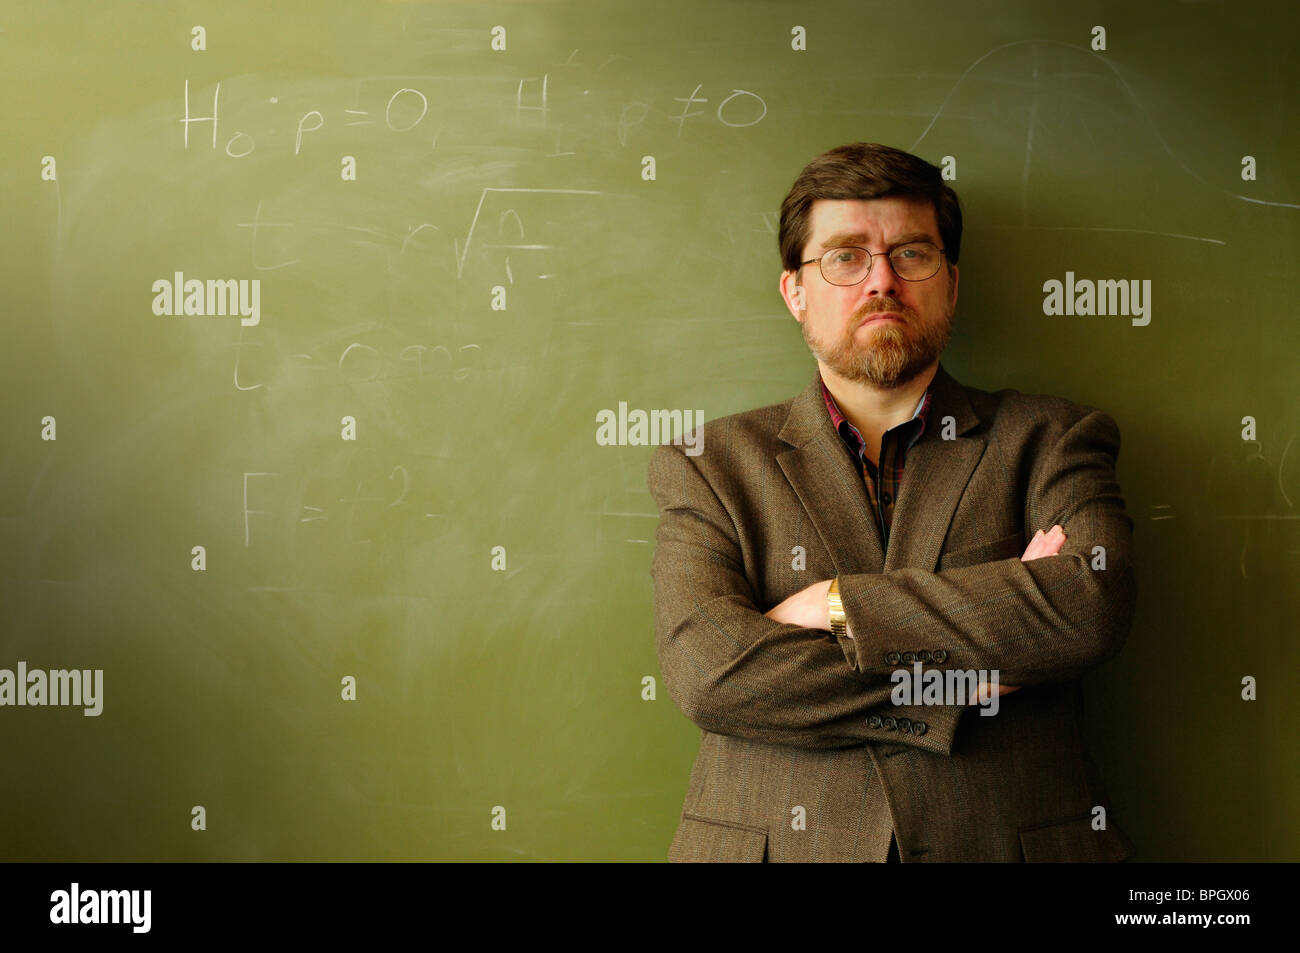 Professeur ou enseignant de mathématiques, debout devant un tableau vert, peut-être agacé ou déterminé. Banque D'Images